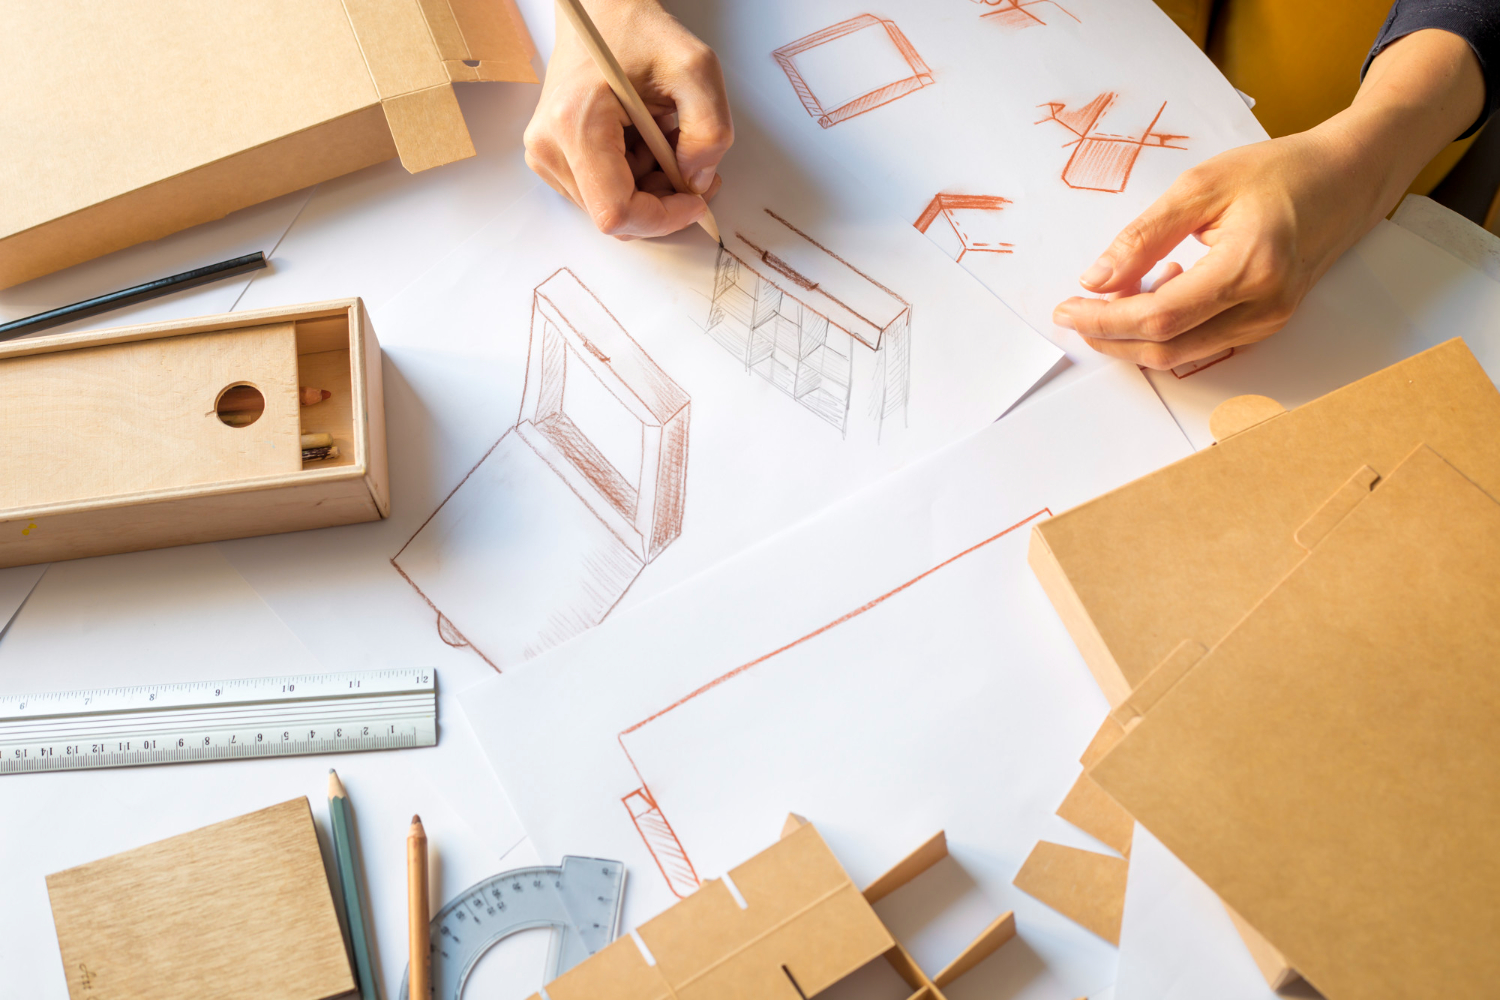 designer-estudio aram desenha-uma-maquete-para-criar-caixa-de-papelao